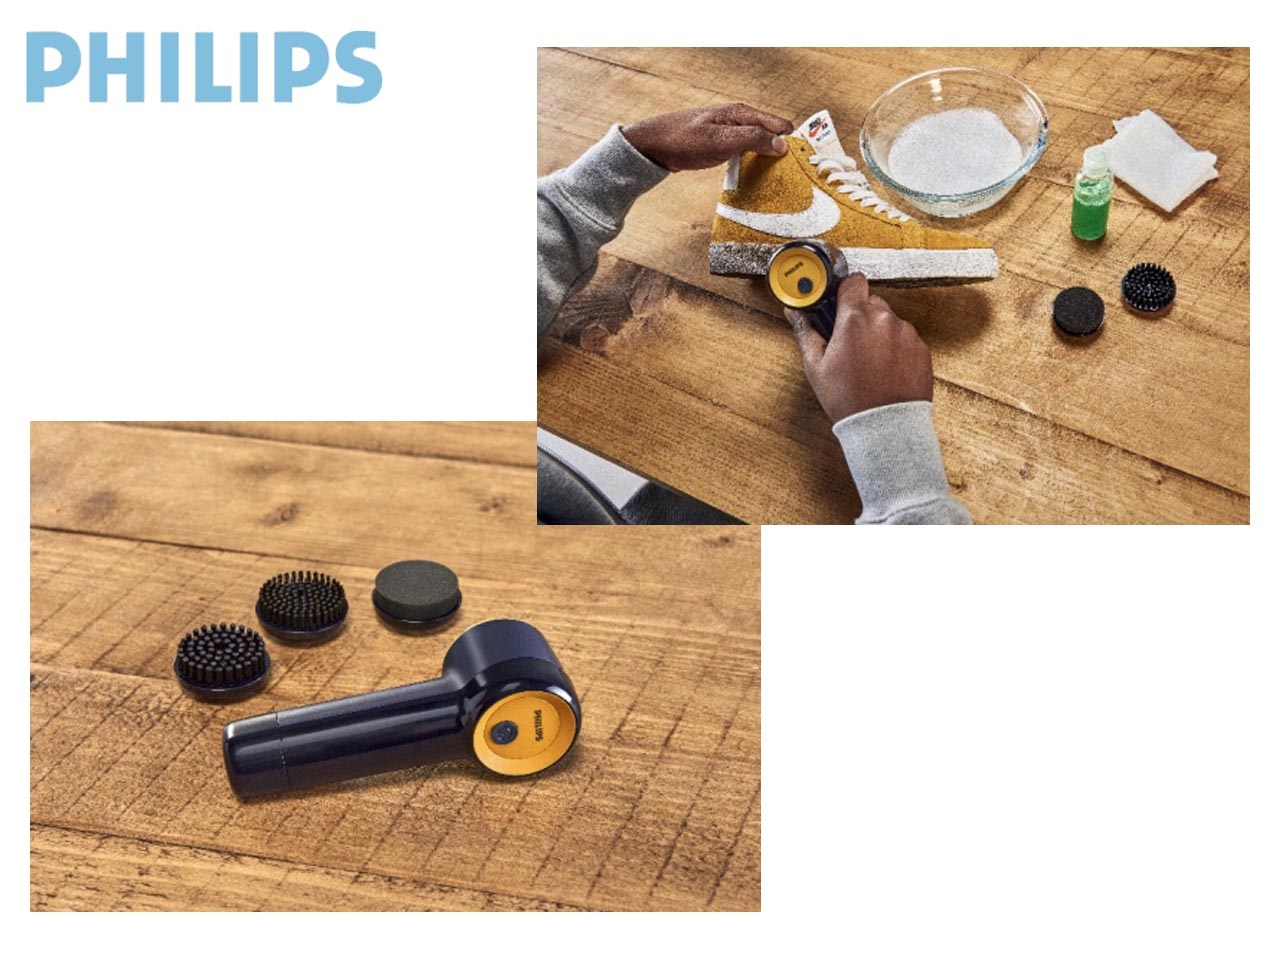 Philips dévoile le Sneaker Cleaner, une brosse nettoyante pour les baskets